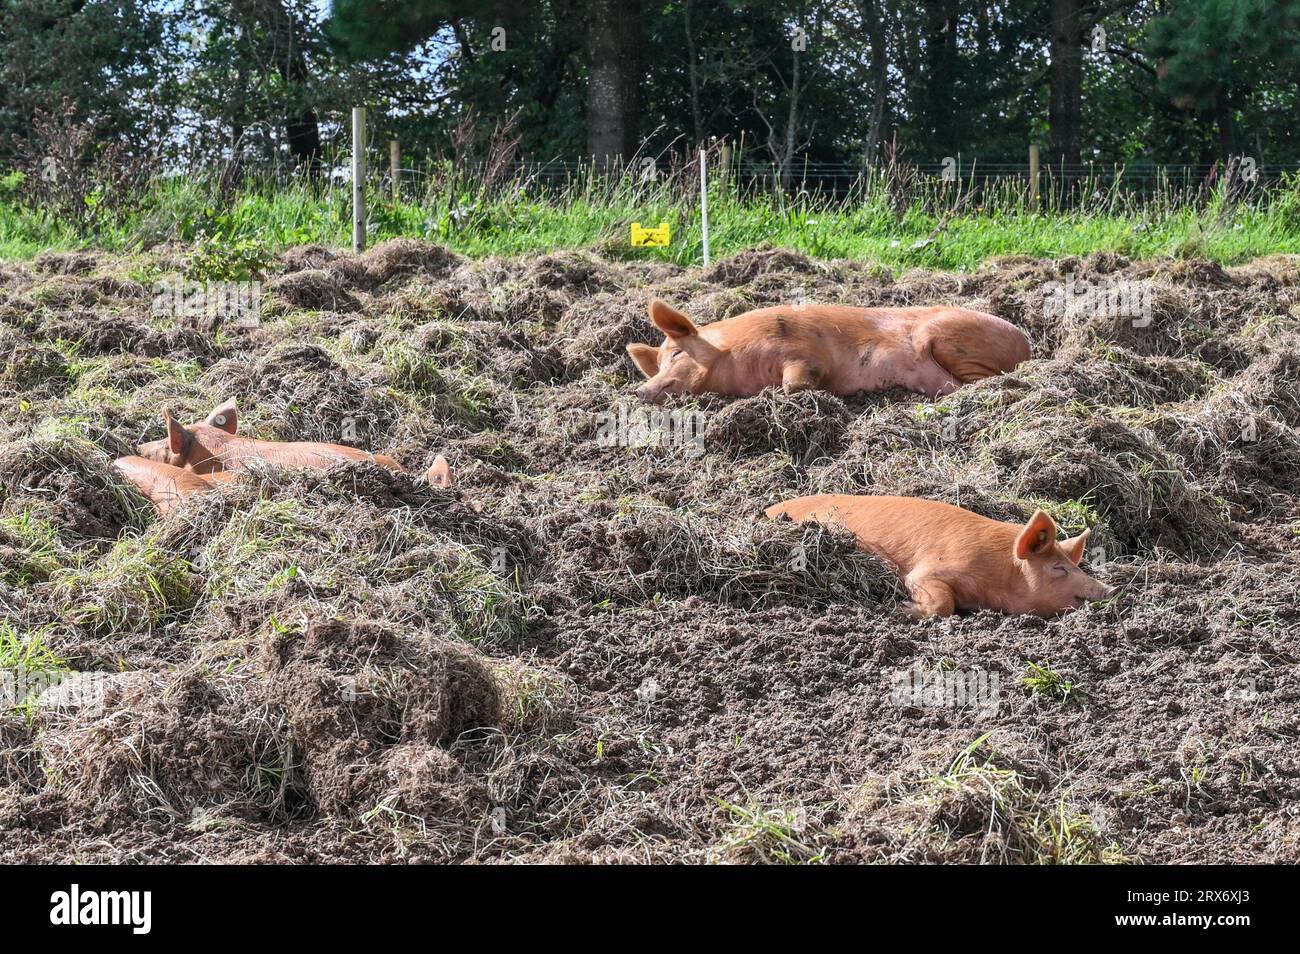 Heligan Gardens, St Austell, Cornouailles, Royaume-Uni. 23 septembre 2023. UK Météo. Ces cochons faisaient une sieste au soleil aujourd'hui dans les jardins perdus d'Heligan, le dernier jour officiel de l'été de cette année. Crédit Simon Maycock / Alamy Live News. Banque D'Images